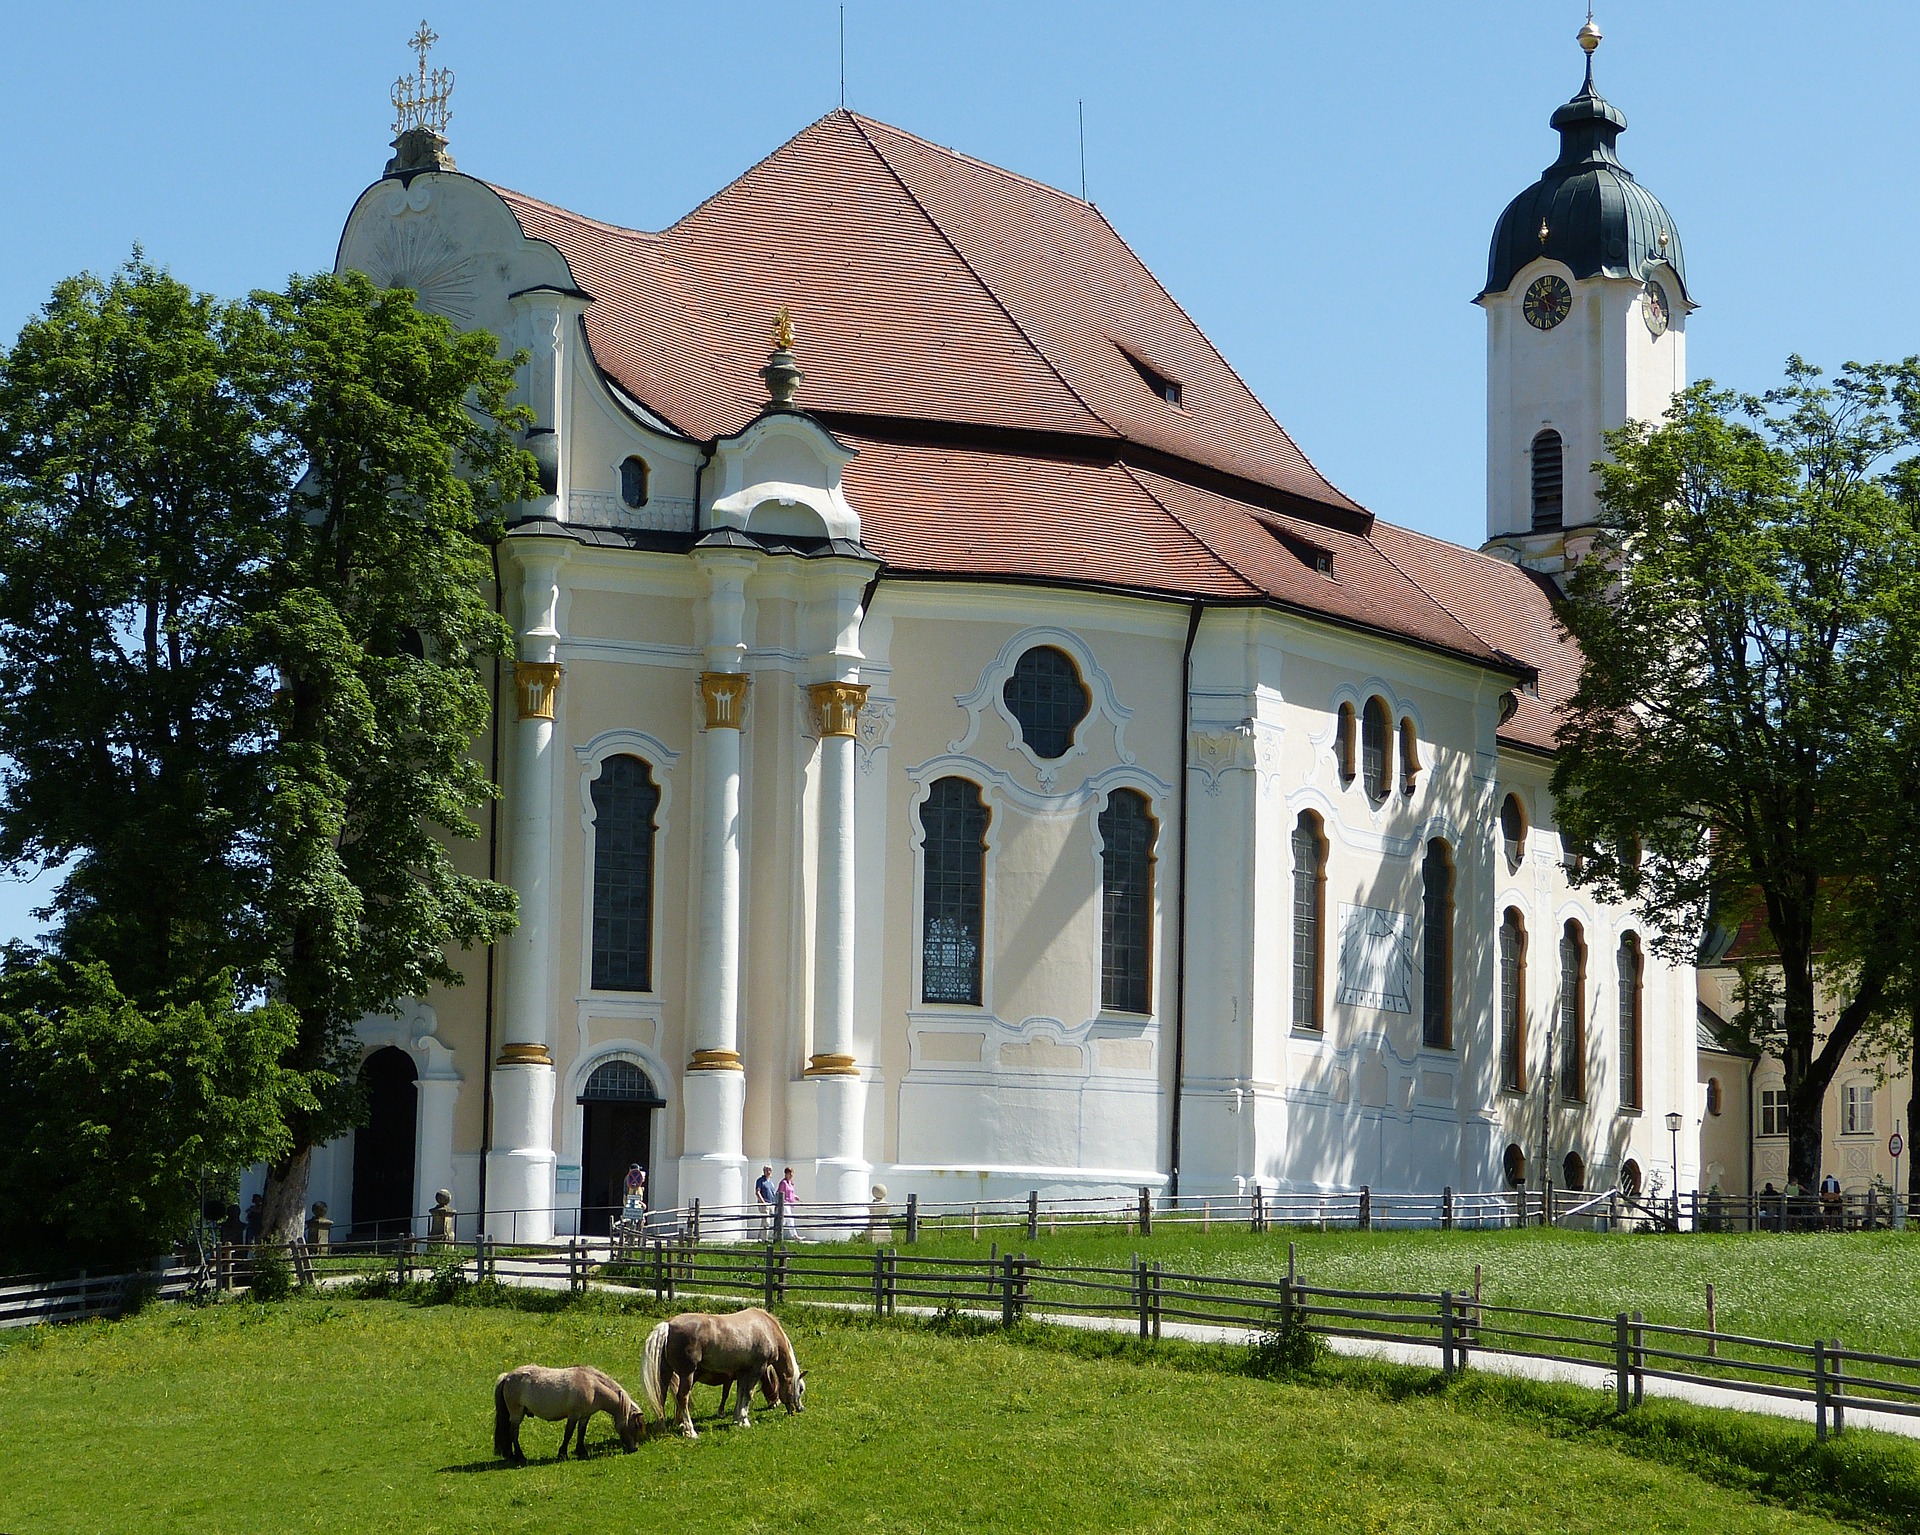 Wieskirche in Bayern - ein beliebter Wallfahrtsort.